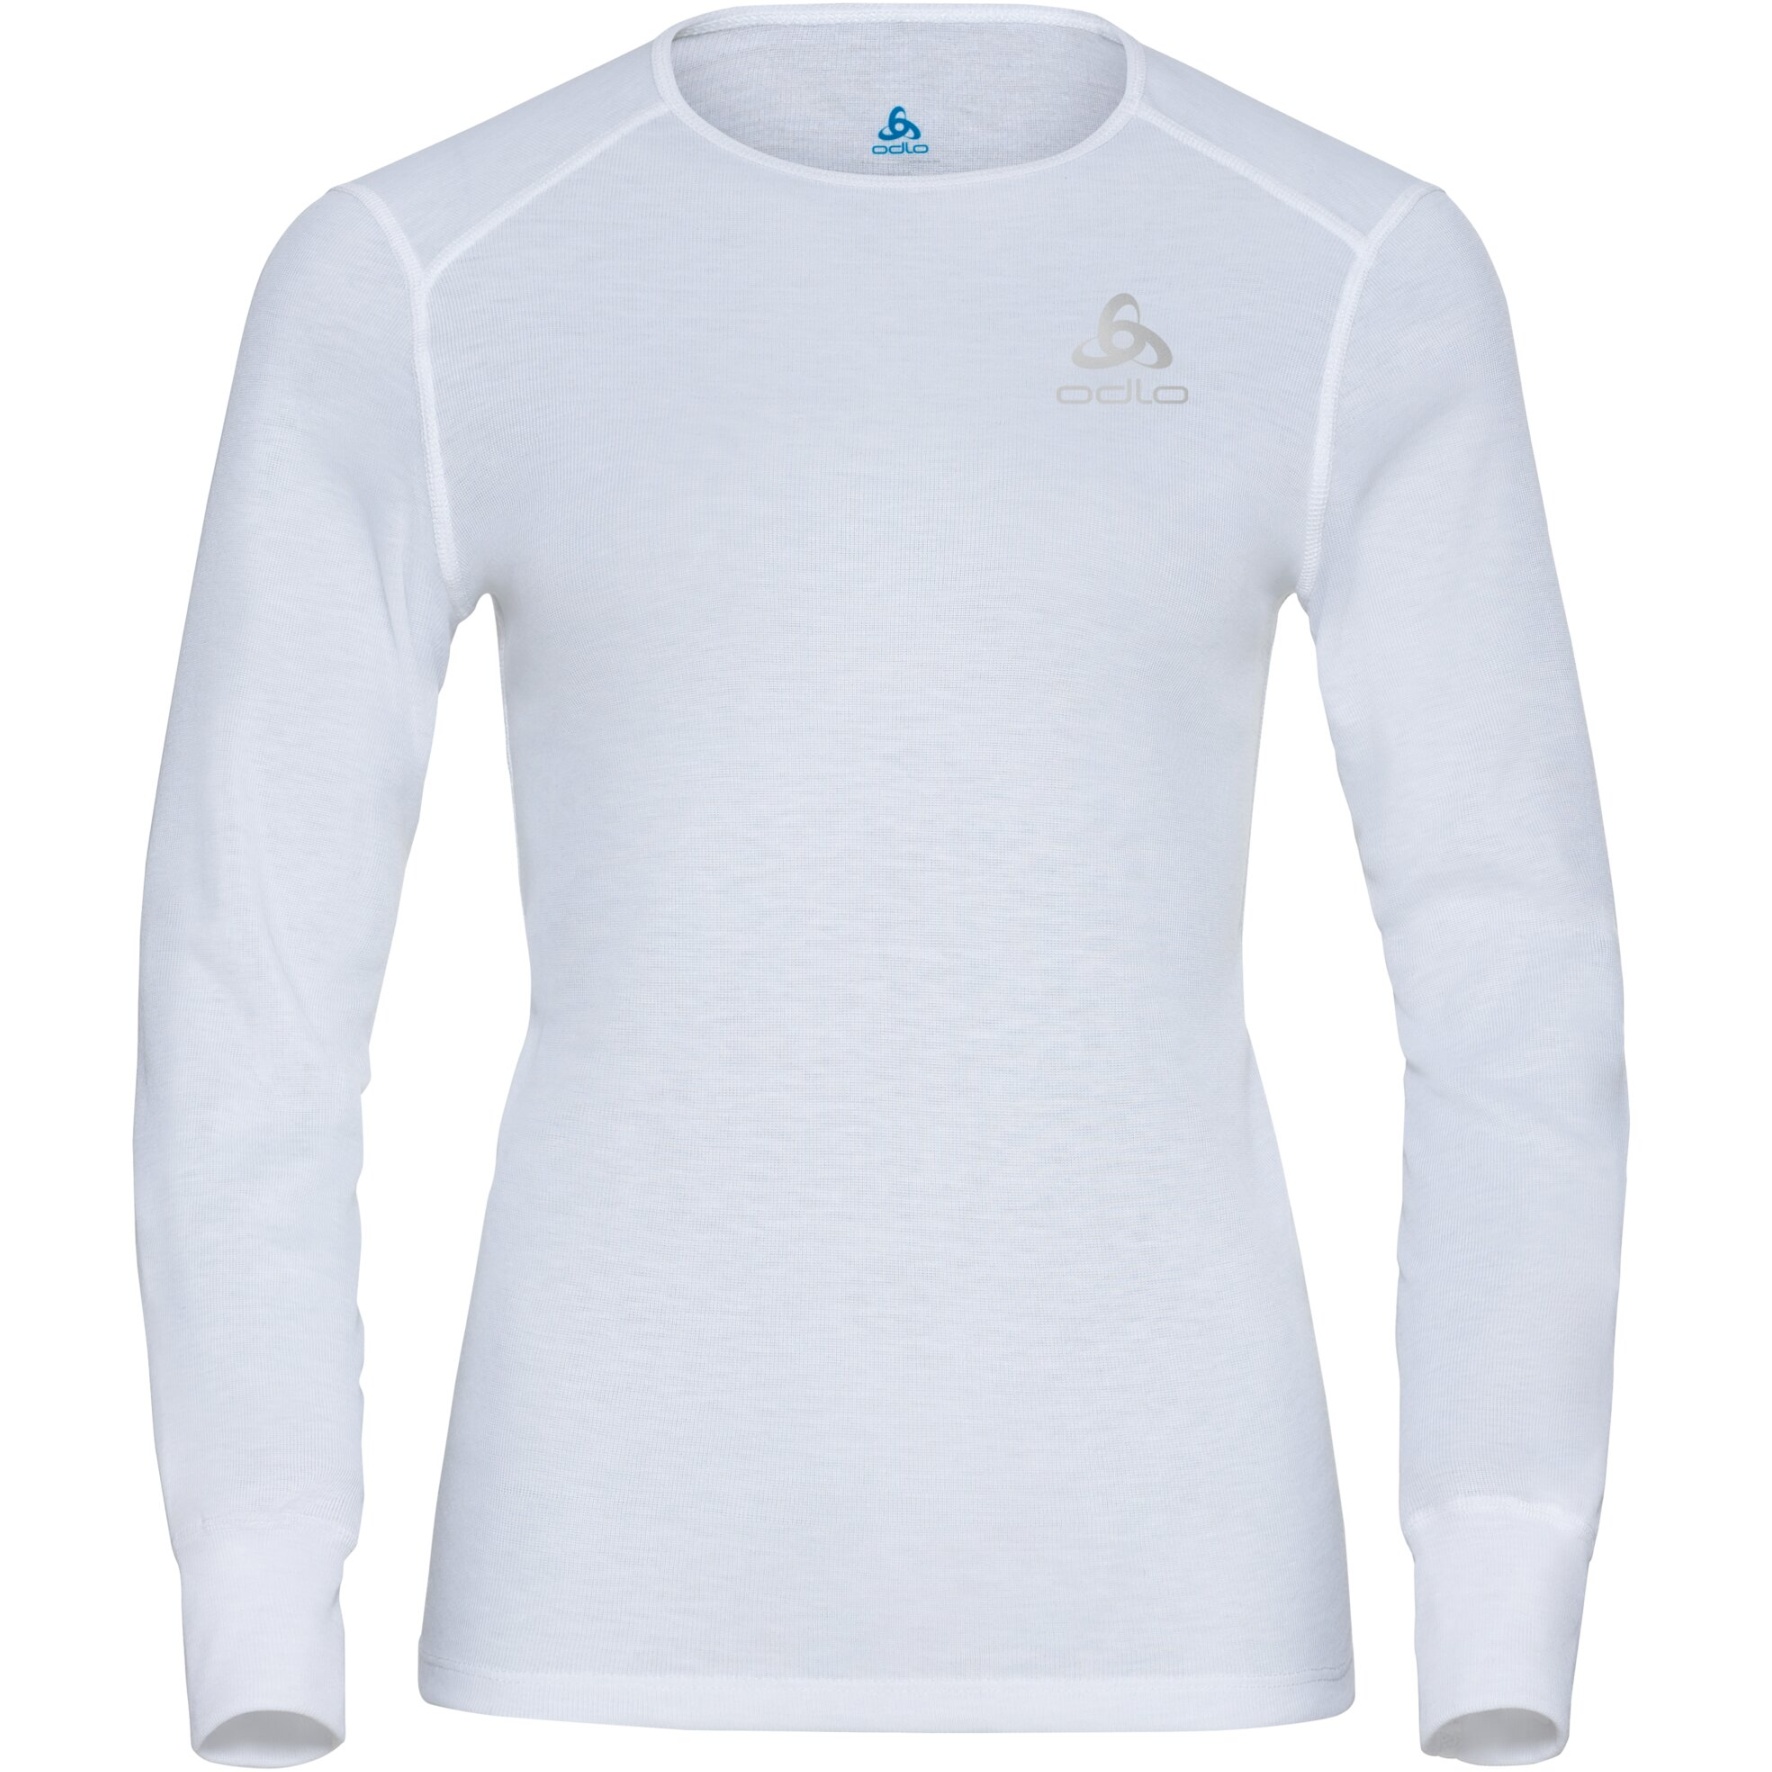 Bild von Odlo Active Warm Langarm-Unterhemd Damen - weiß